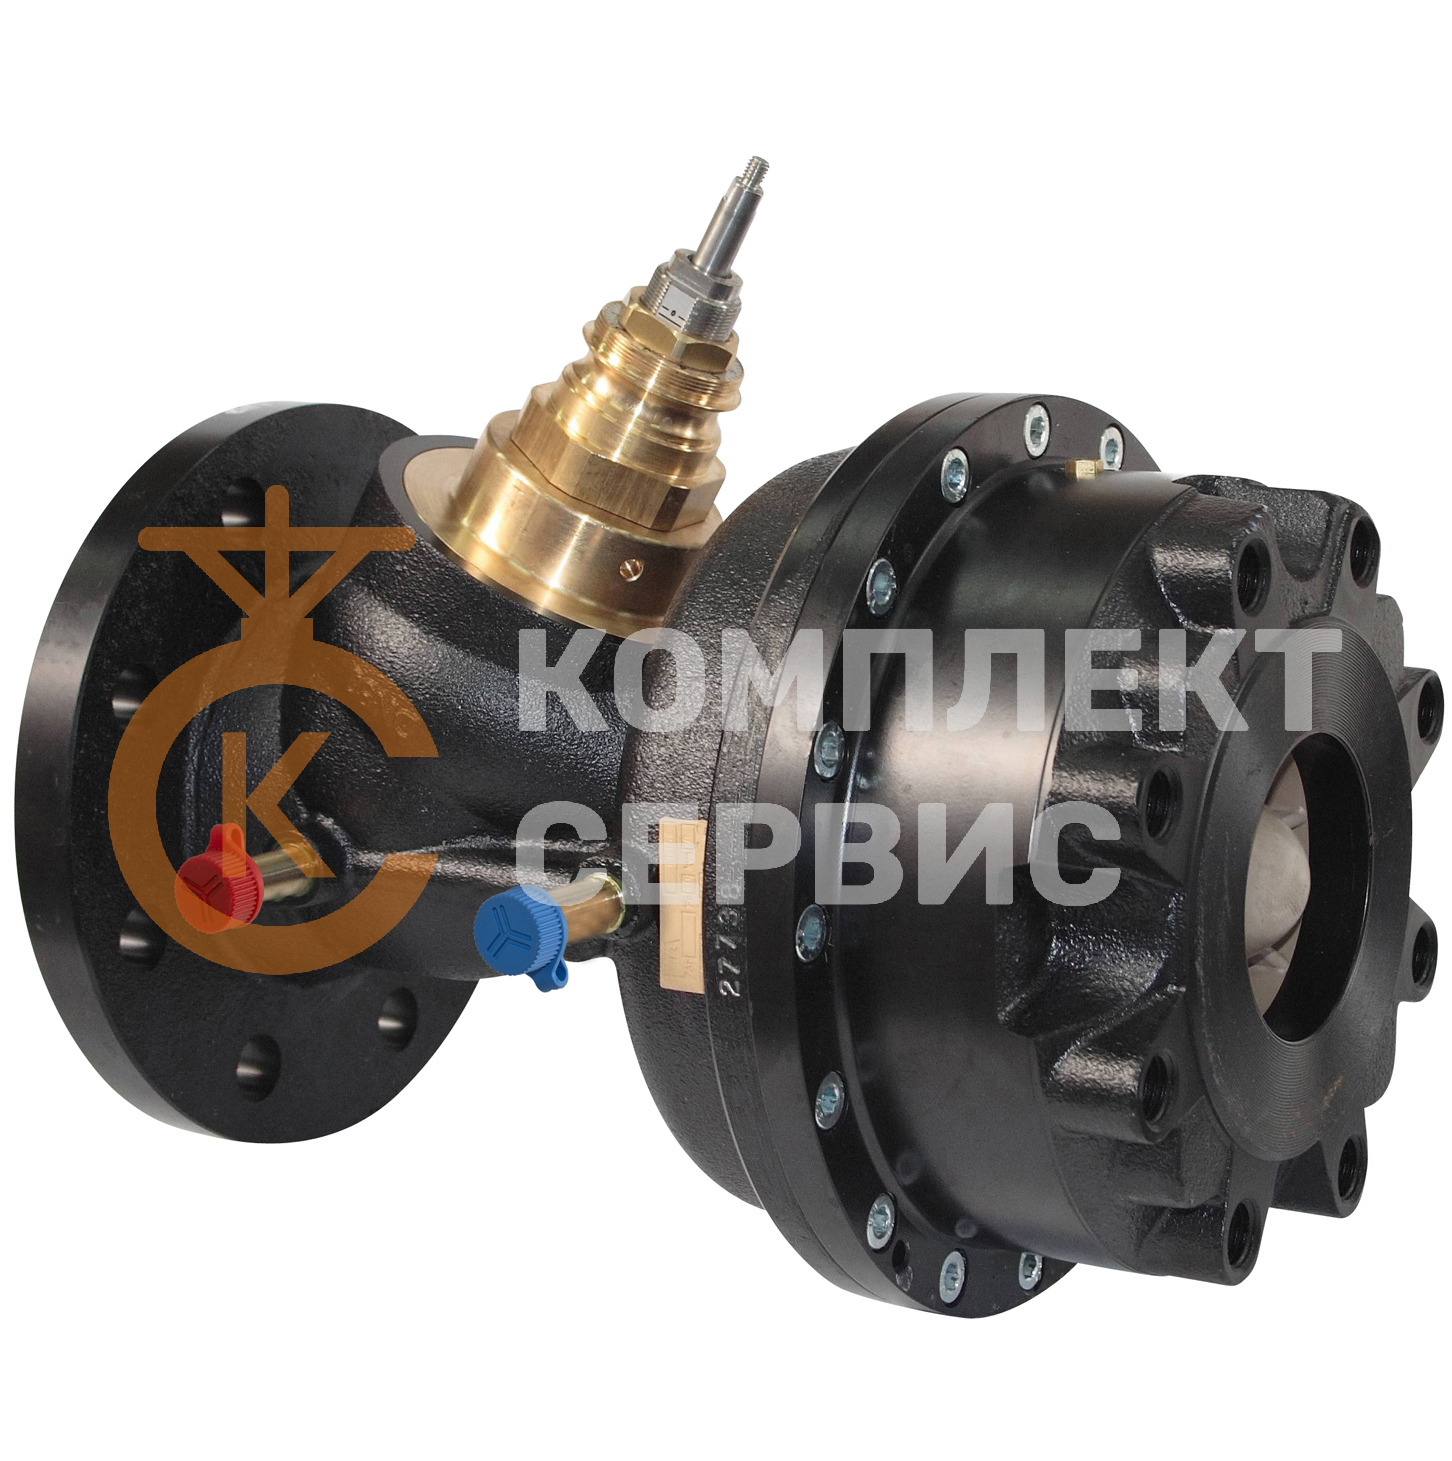 Клапан балансировочный регулирующий комбинированный IMI TA KTM 512, чугун, фланцы, без измерительных штуцеров смотреть фото